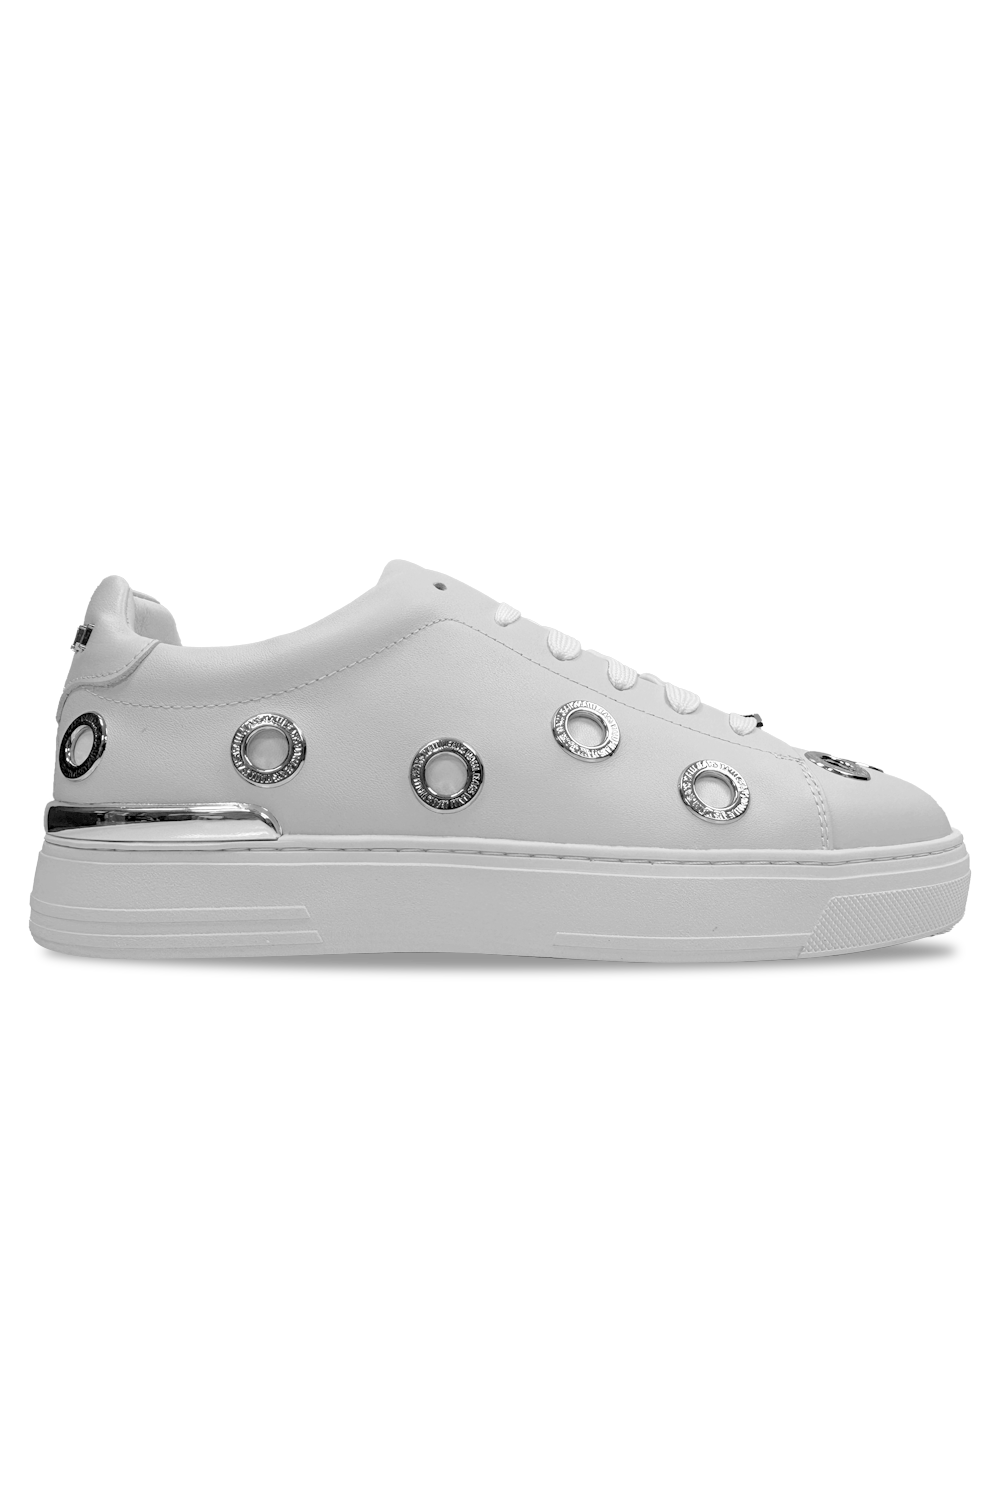 Vialli Vje2227 Legend Shoe White – Sedgars SA